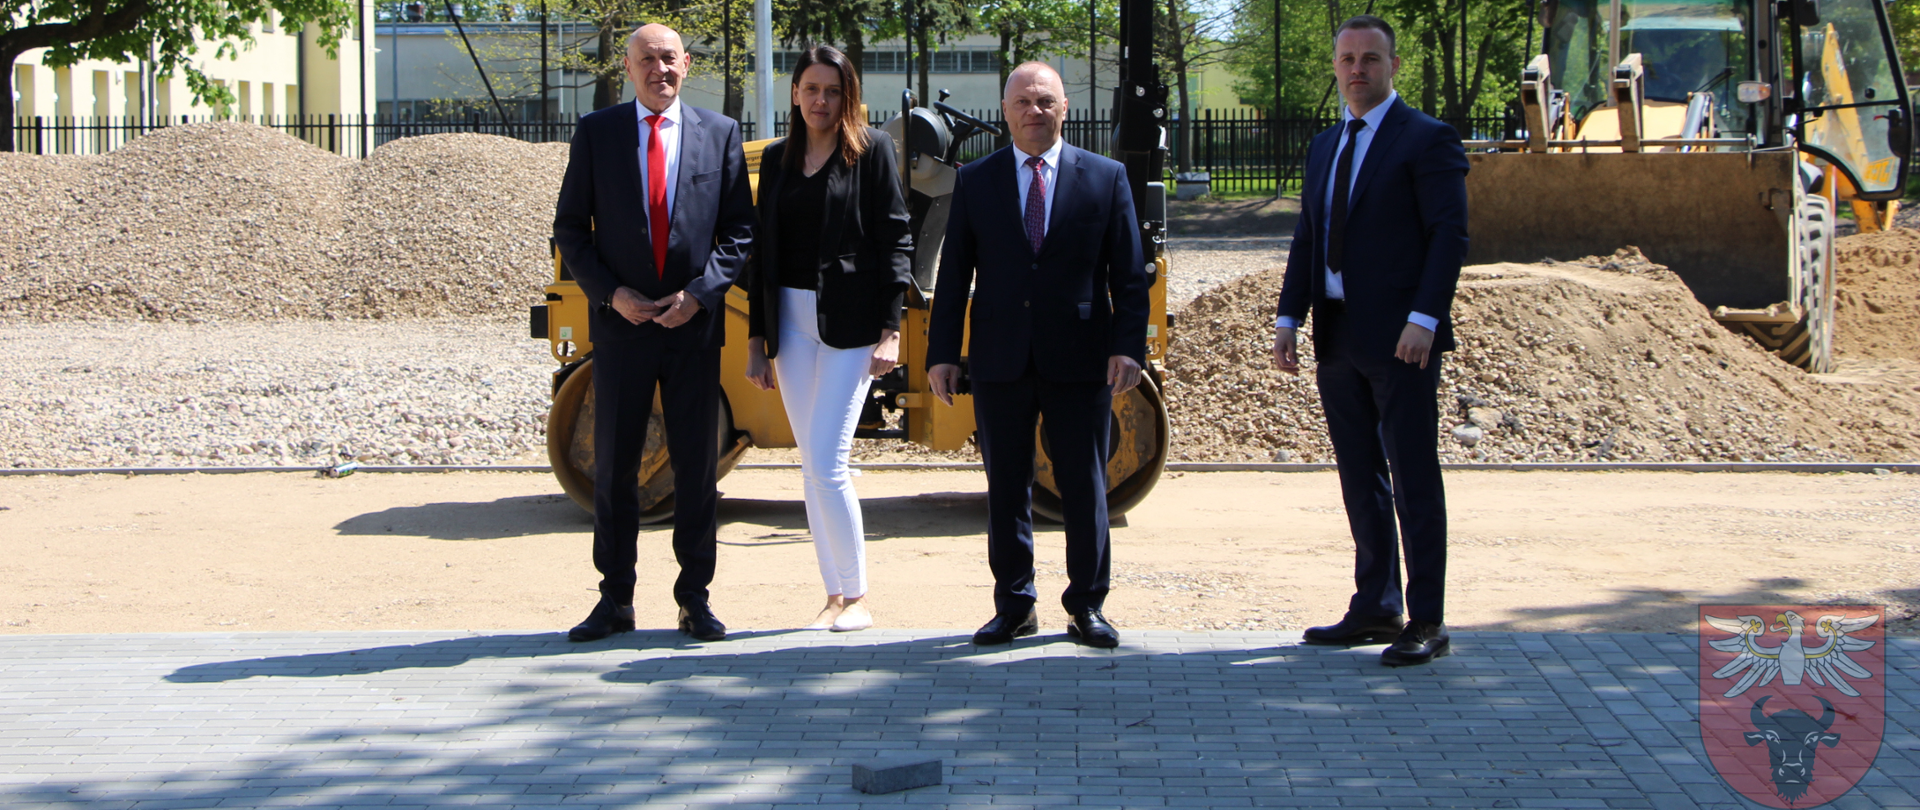 Na placu budowy ZSA w Zambrowie znajdują się 4 osoby. Od lewej Starosta Zambrowski, dyrektor ZSA, Wiceminister Rolnictwa i Rozwoju Wsi oraz Wicestarosta Zambrowski.